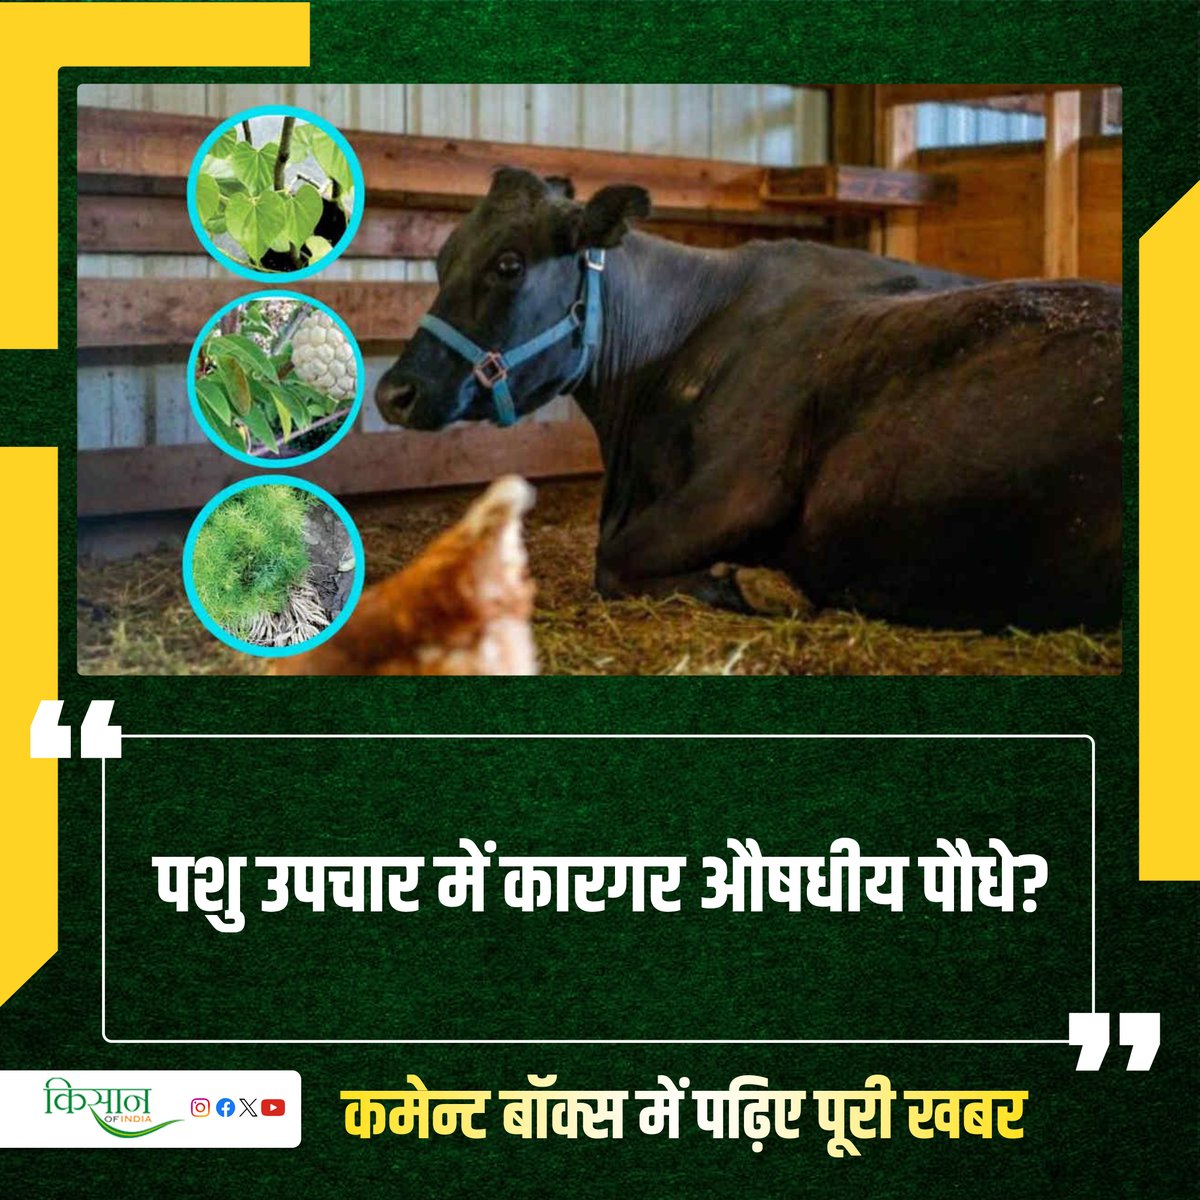 खेती के साथ ही ज़्यादातर किसान पशुपालन भी करते हैं, क्योंकि इससे उन्हें कई फ़ायदे होते हैं। दूध, दही, घी के साथ ही खेती के लिए जैविक खाद मिलती है।

#KisanOfIndia #Agriculture #Animalhusbandry #MedicinalCrops #Kisan #Pashupalan